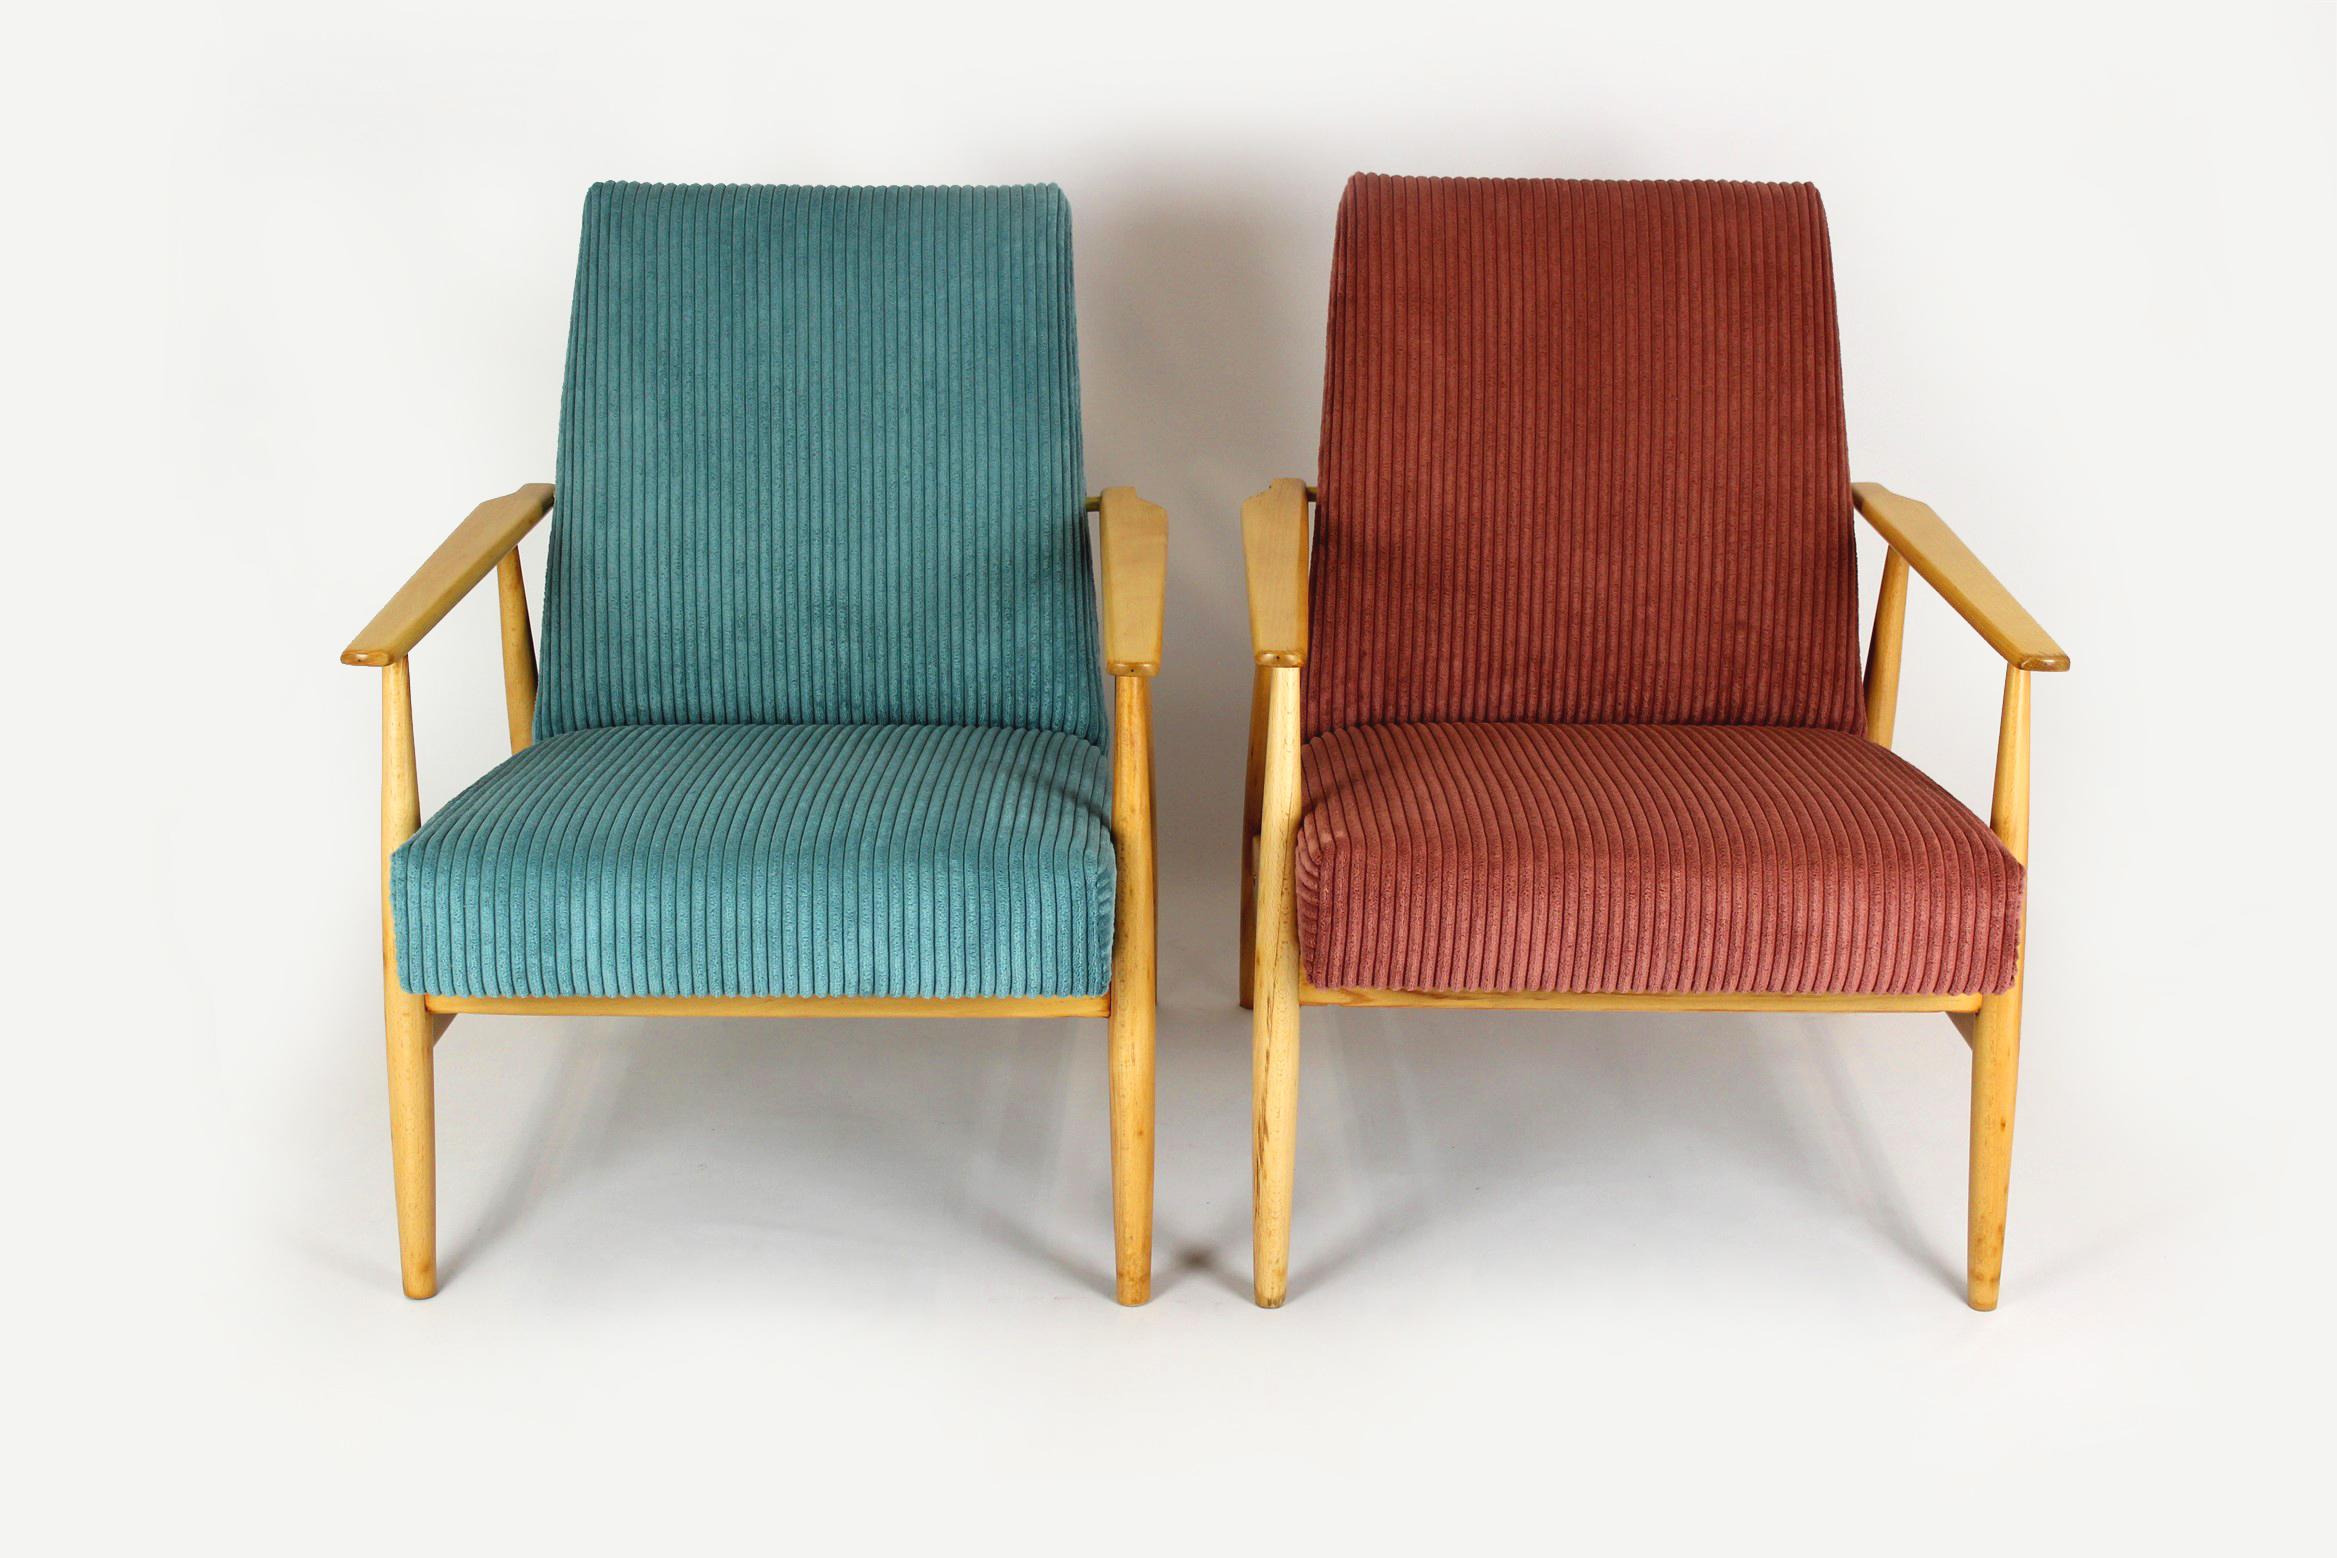 
Ein Paar Sessel aus Buchenholz, die Mitte der 1960er Jahre in Polen hergestellt wurden. Diese Sessel sind vollständig restauriert worden. Das Holz ist seidenmatt lackiert. Die Sitze wurden erneuert und mit einem türkisfarbenen und rosafarbenen